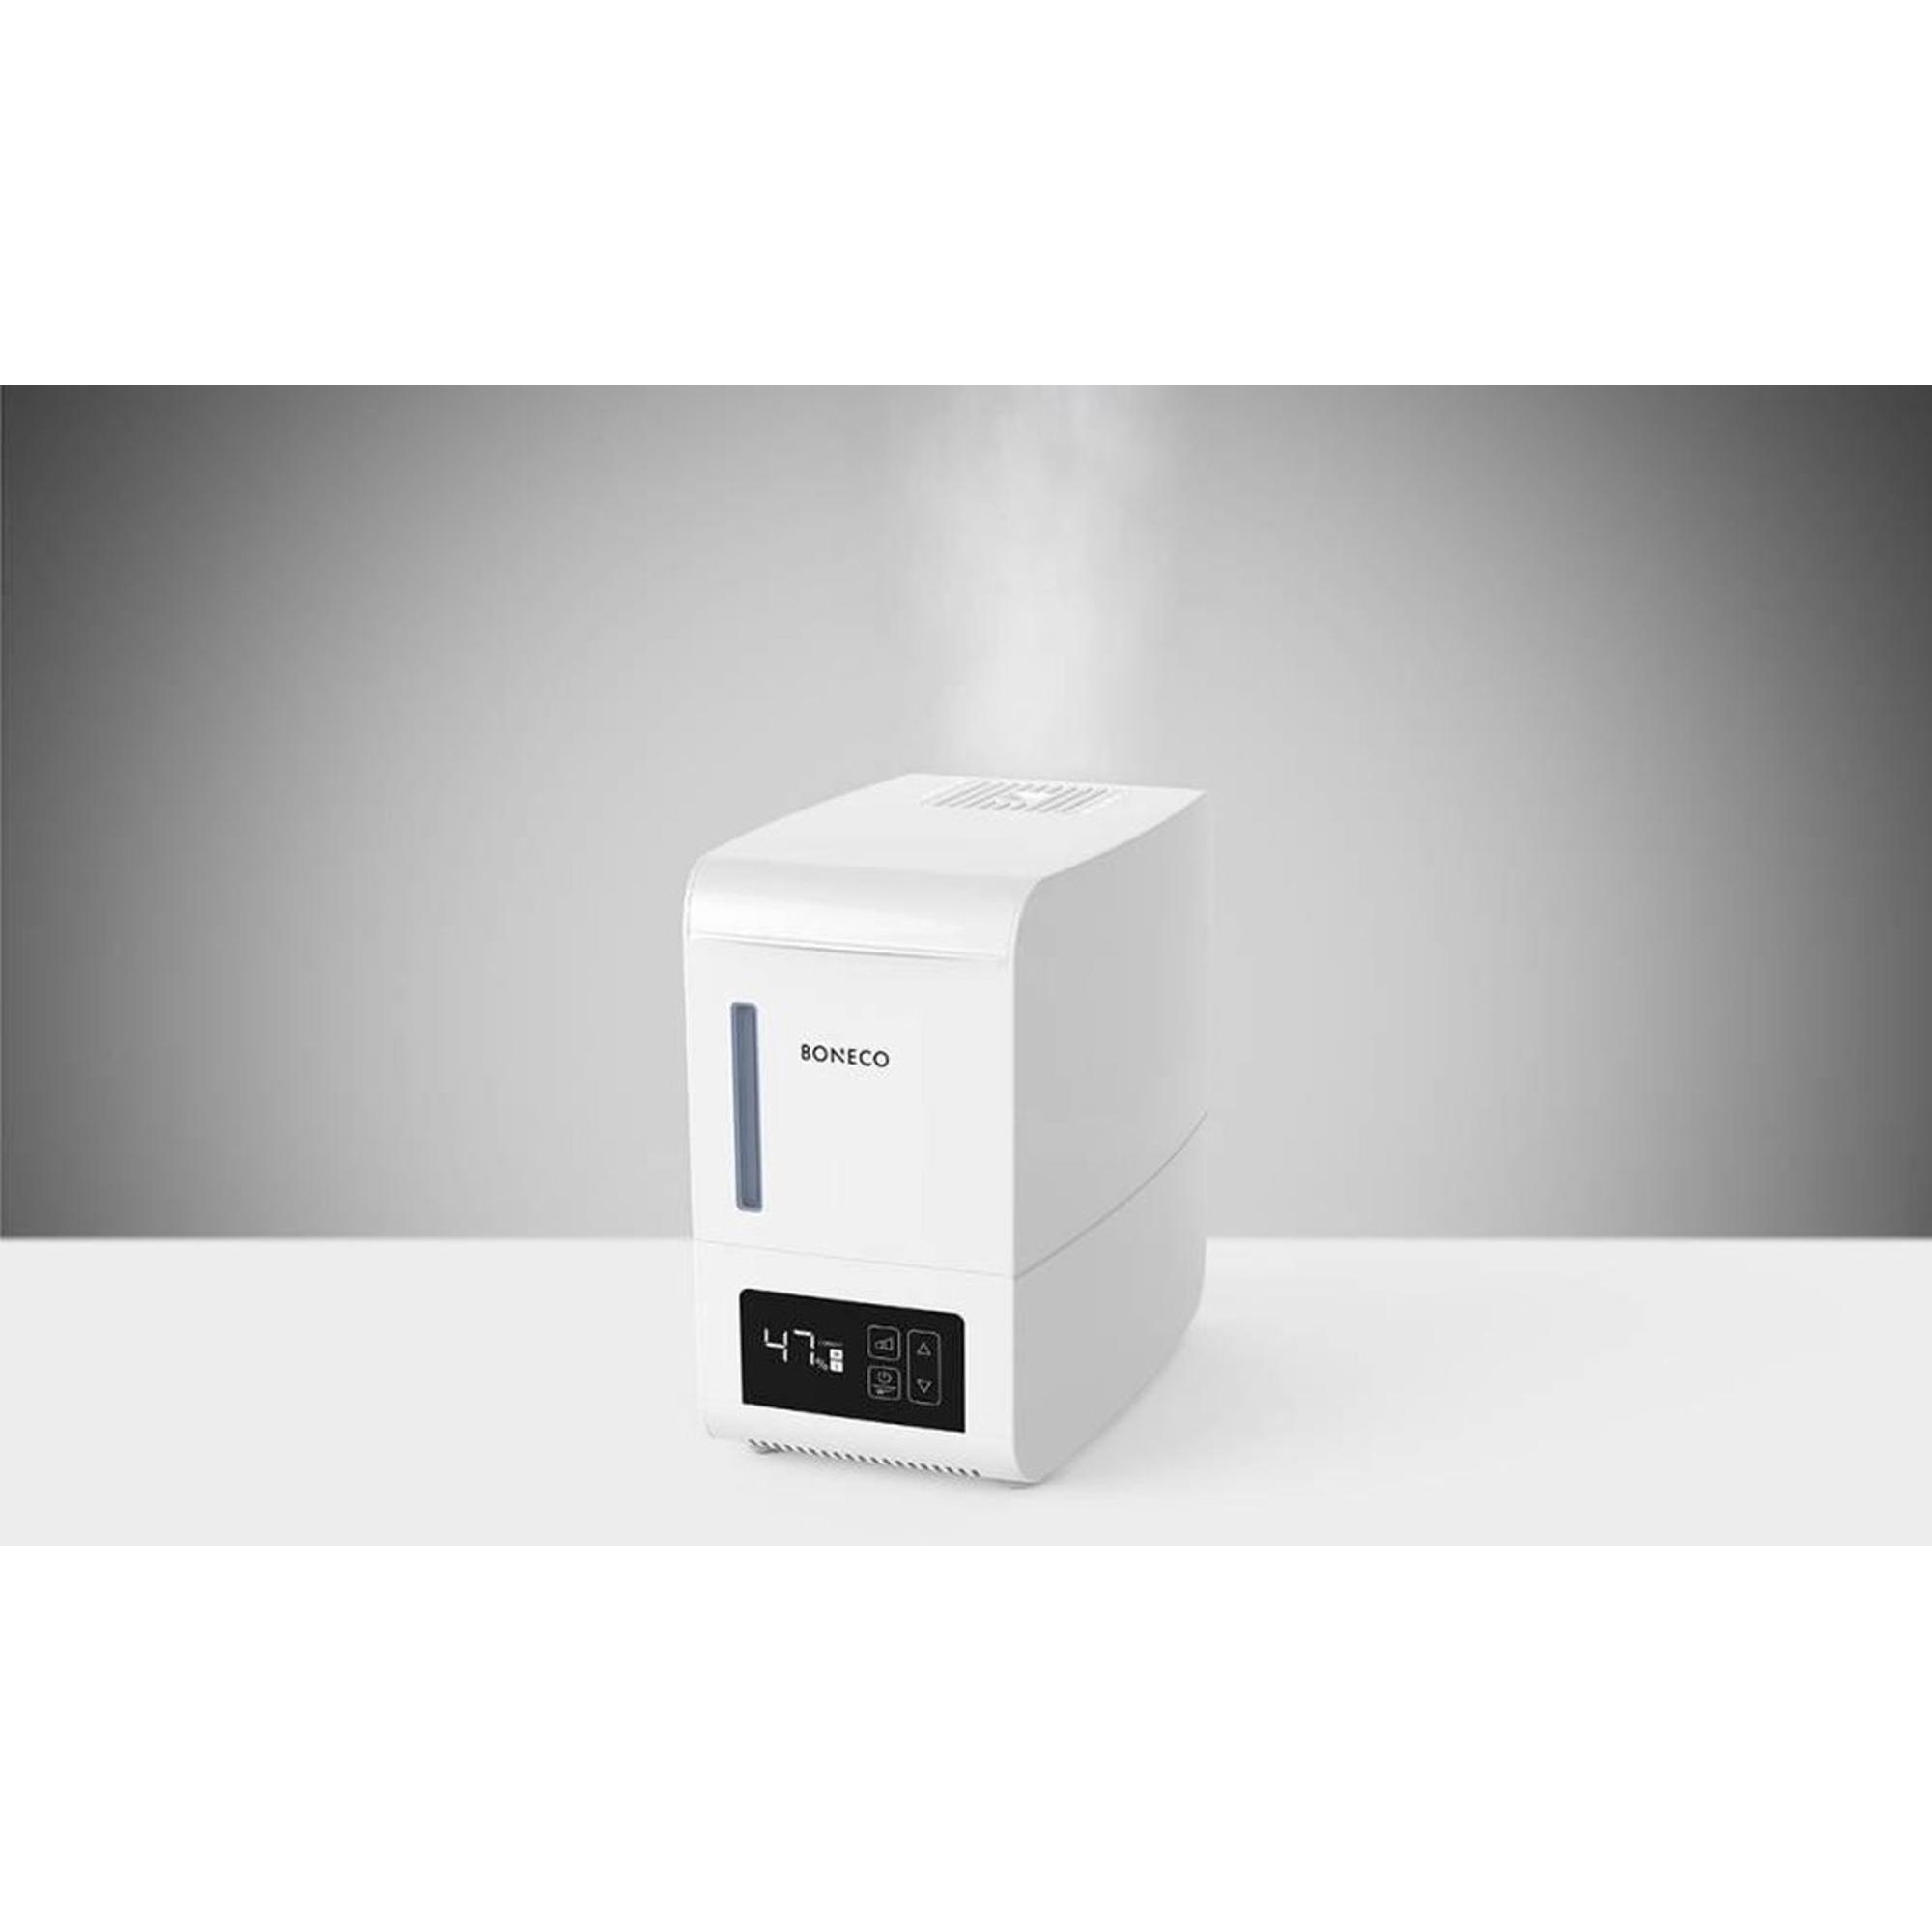 Boneco humidificateur vapeur 150m3 affichage digital blanc - S250 